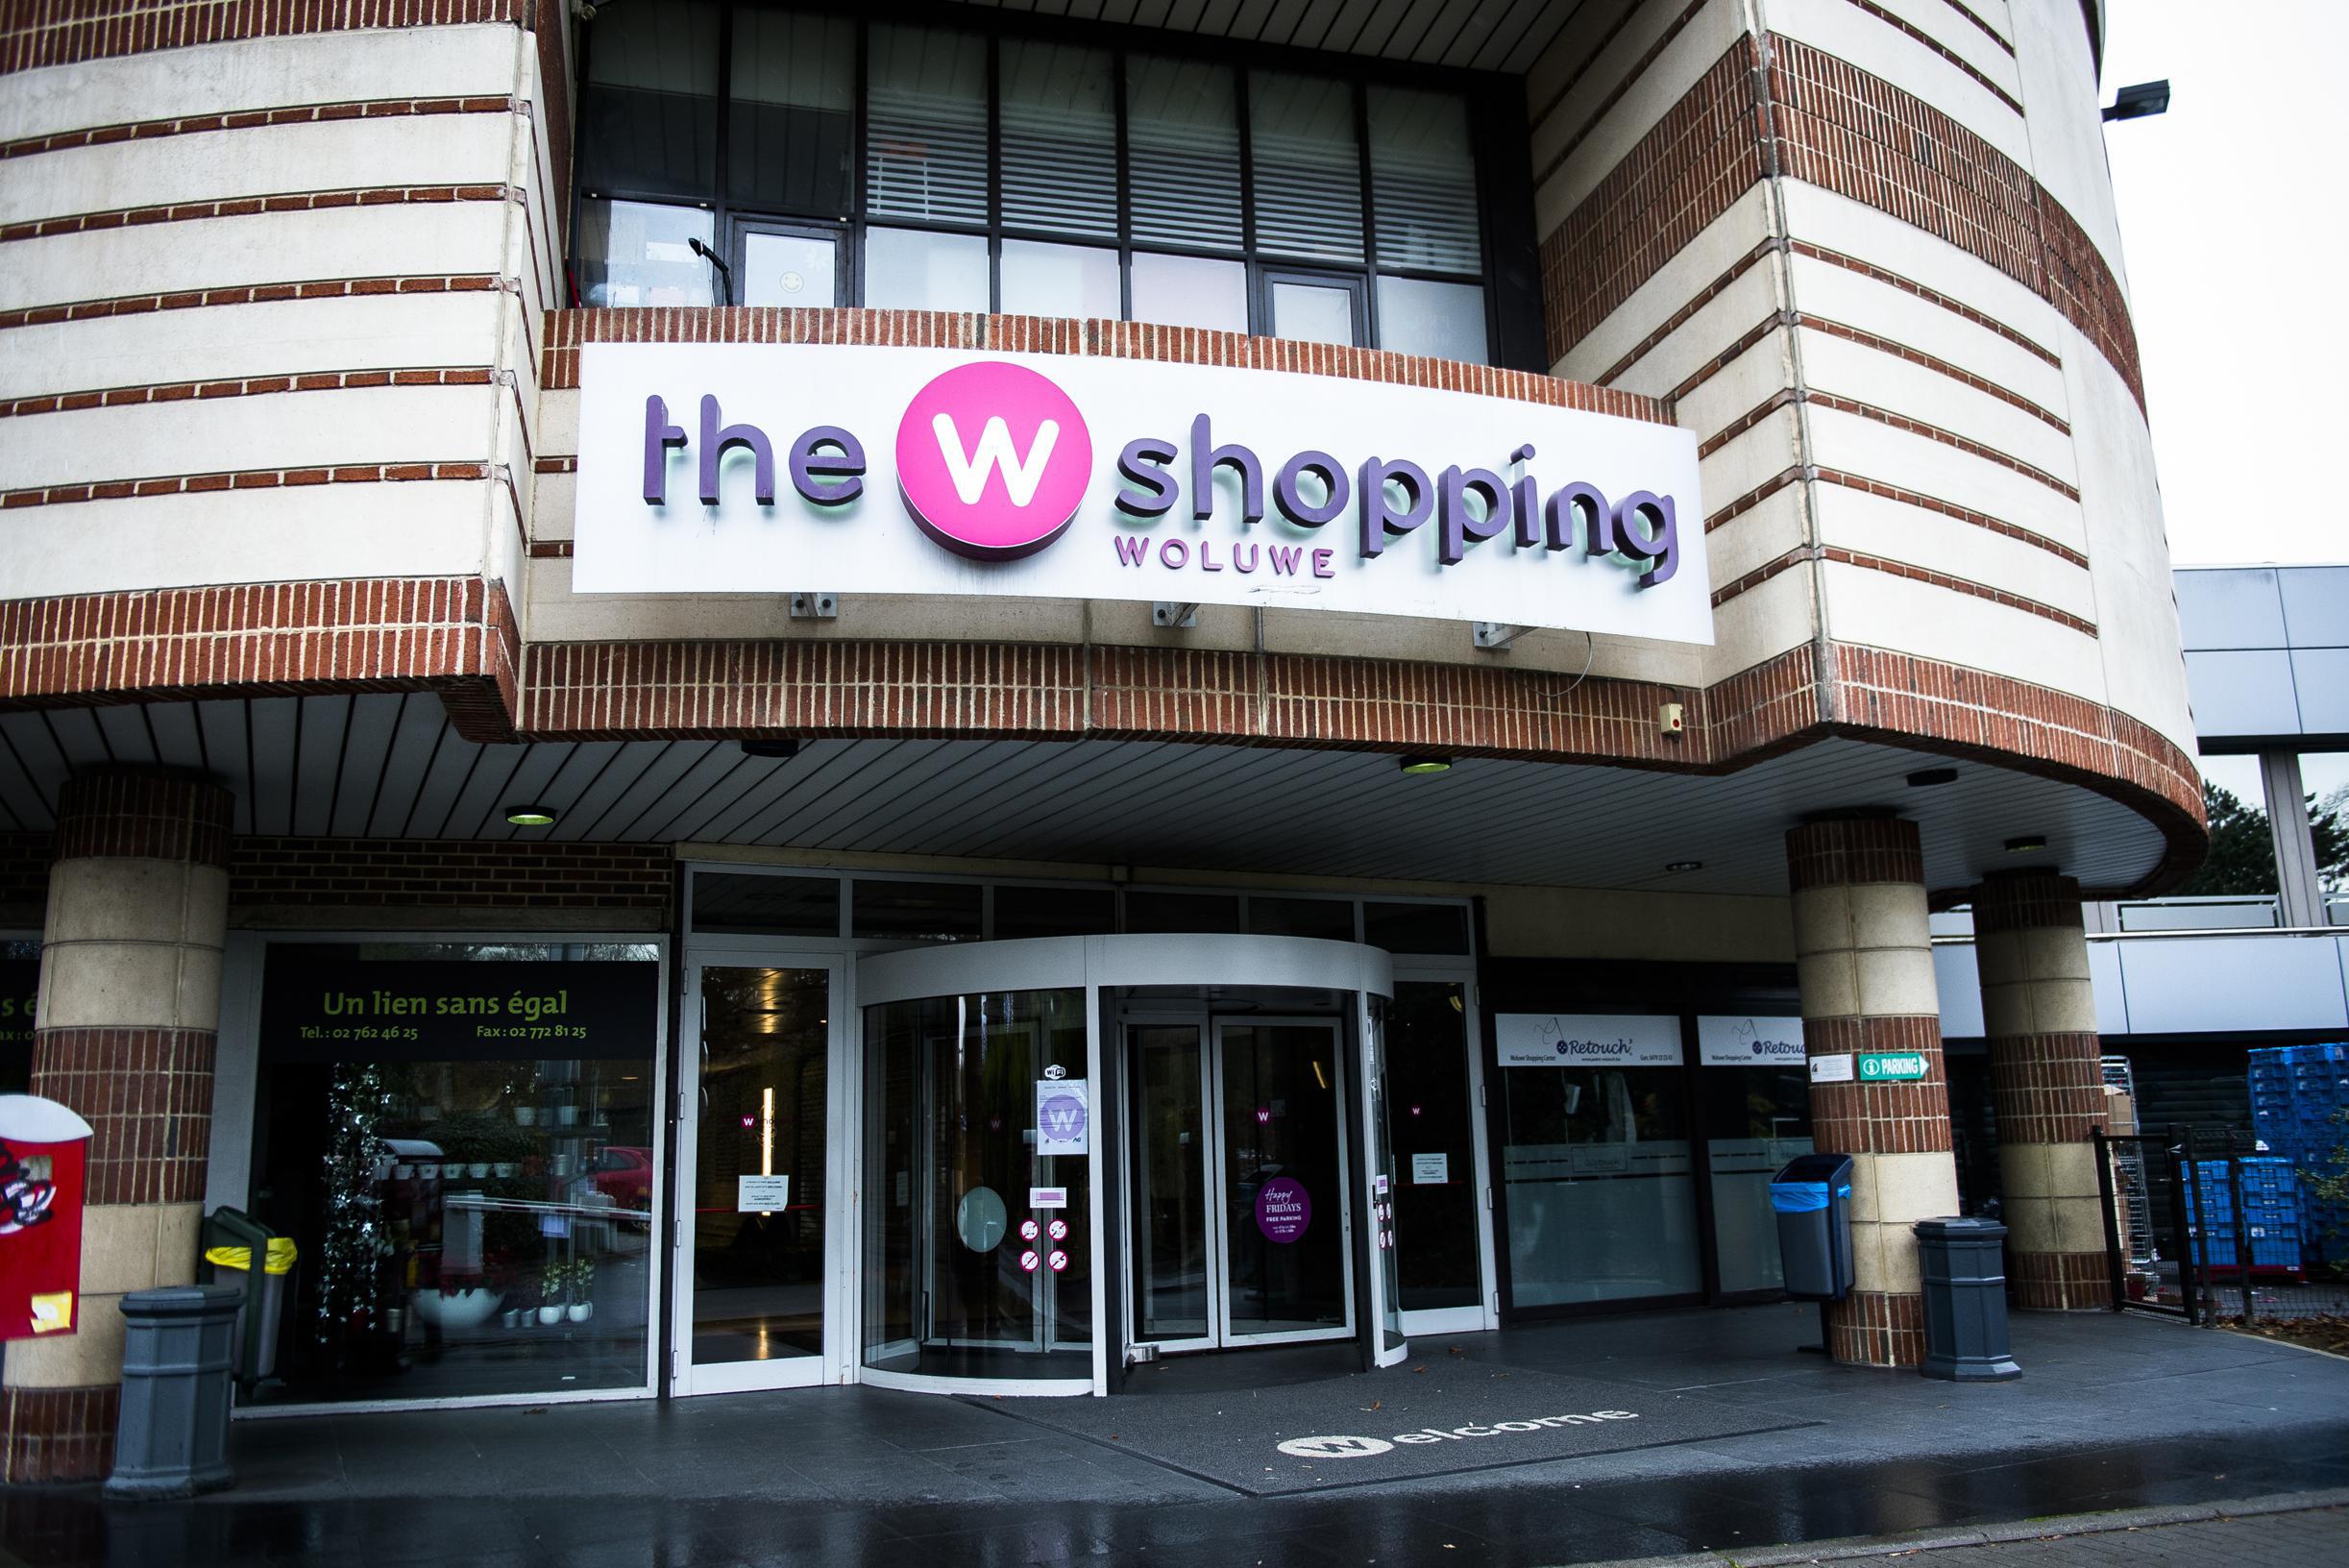 Gemeente geeft opnieuw negatief advies voor uitbreiding Woluwe Shopping Center: “Te massaal project”